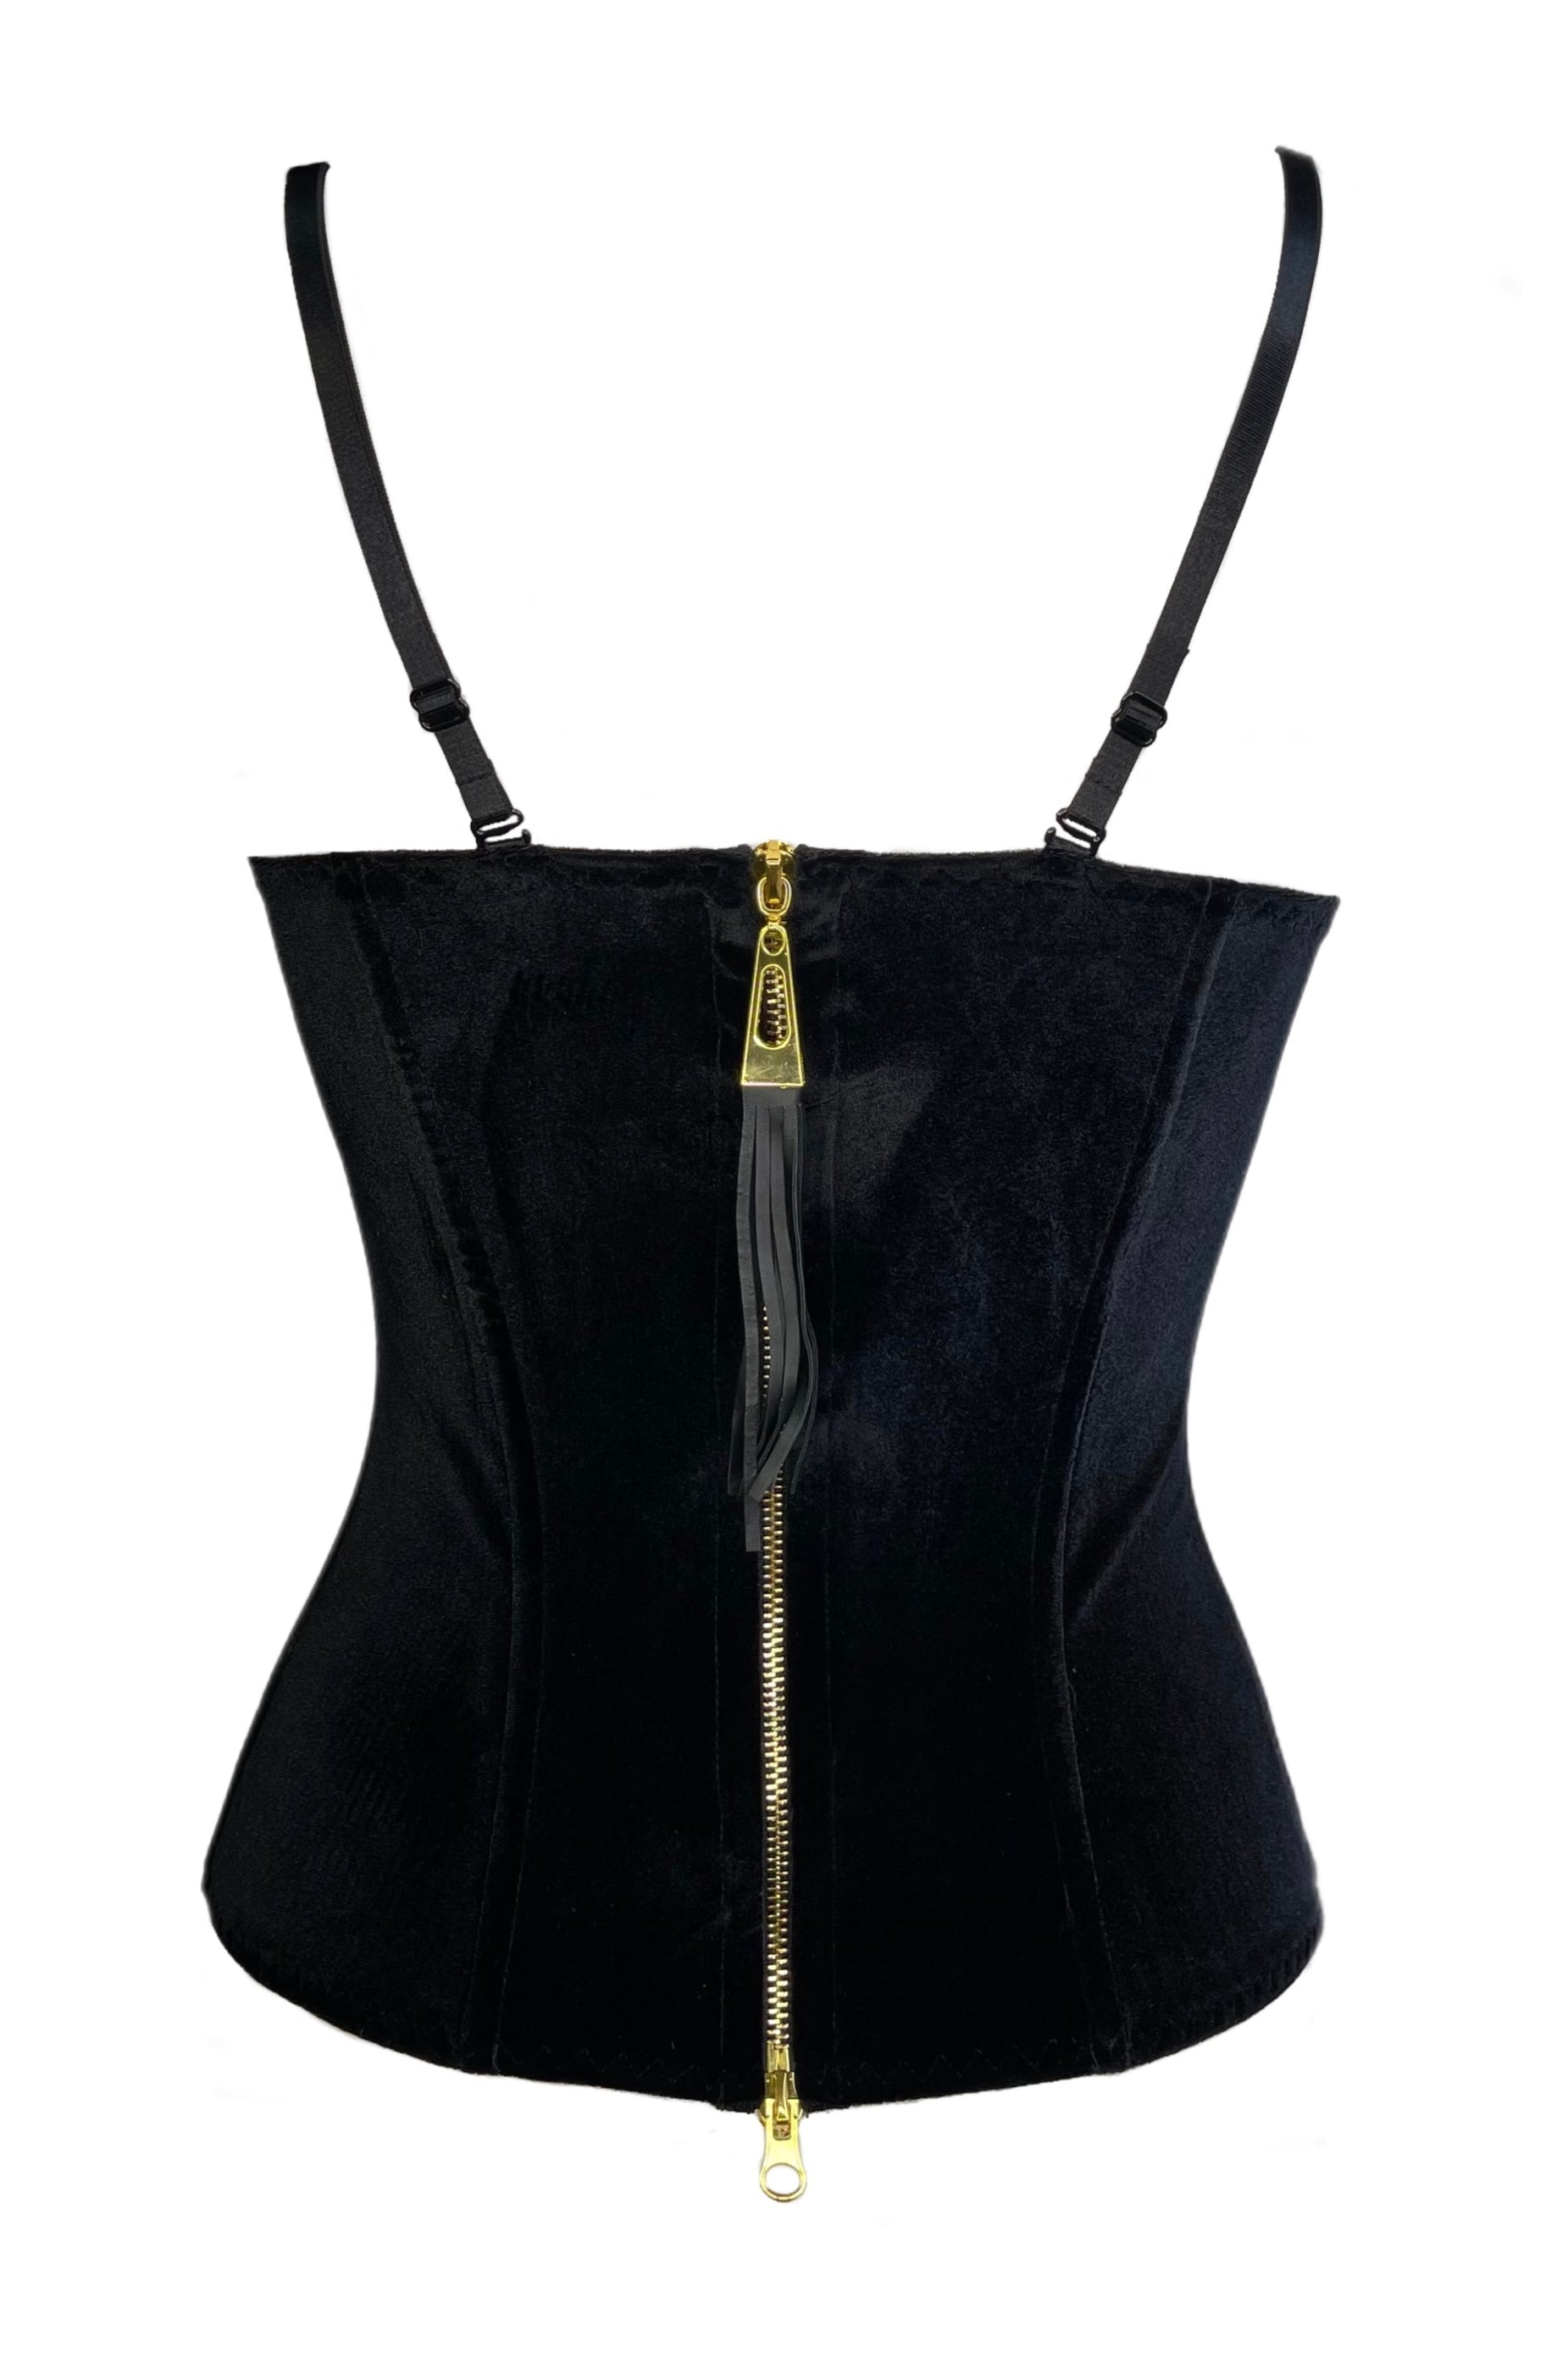 Velvetta black corset